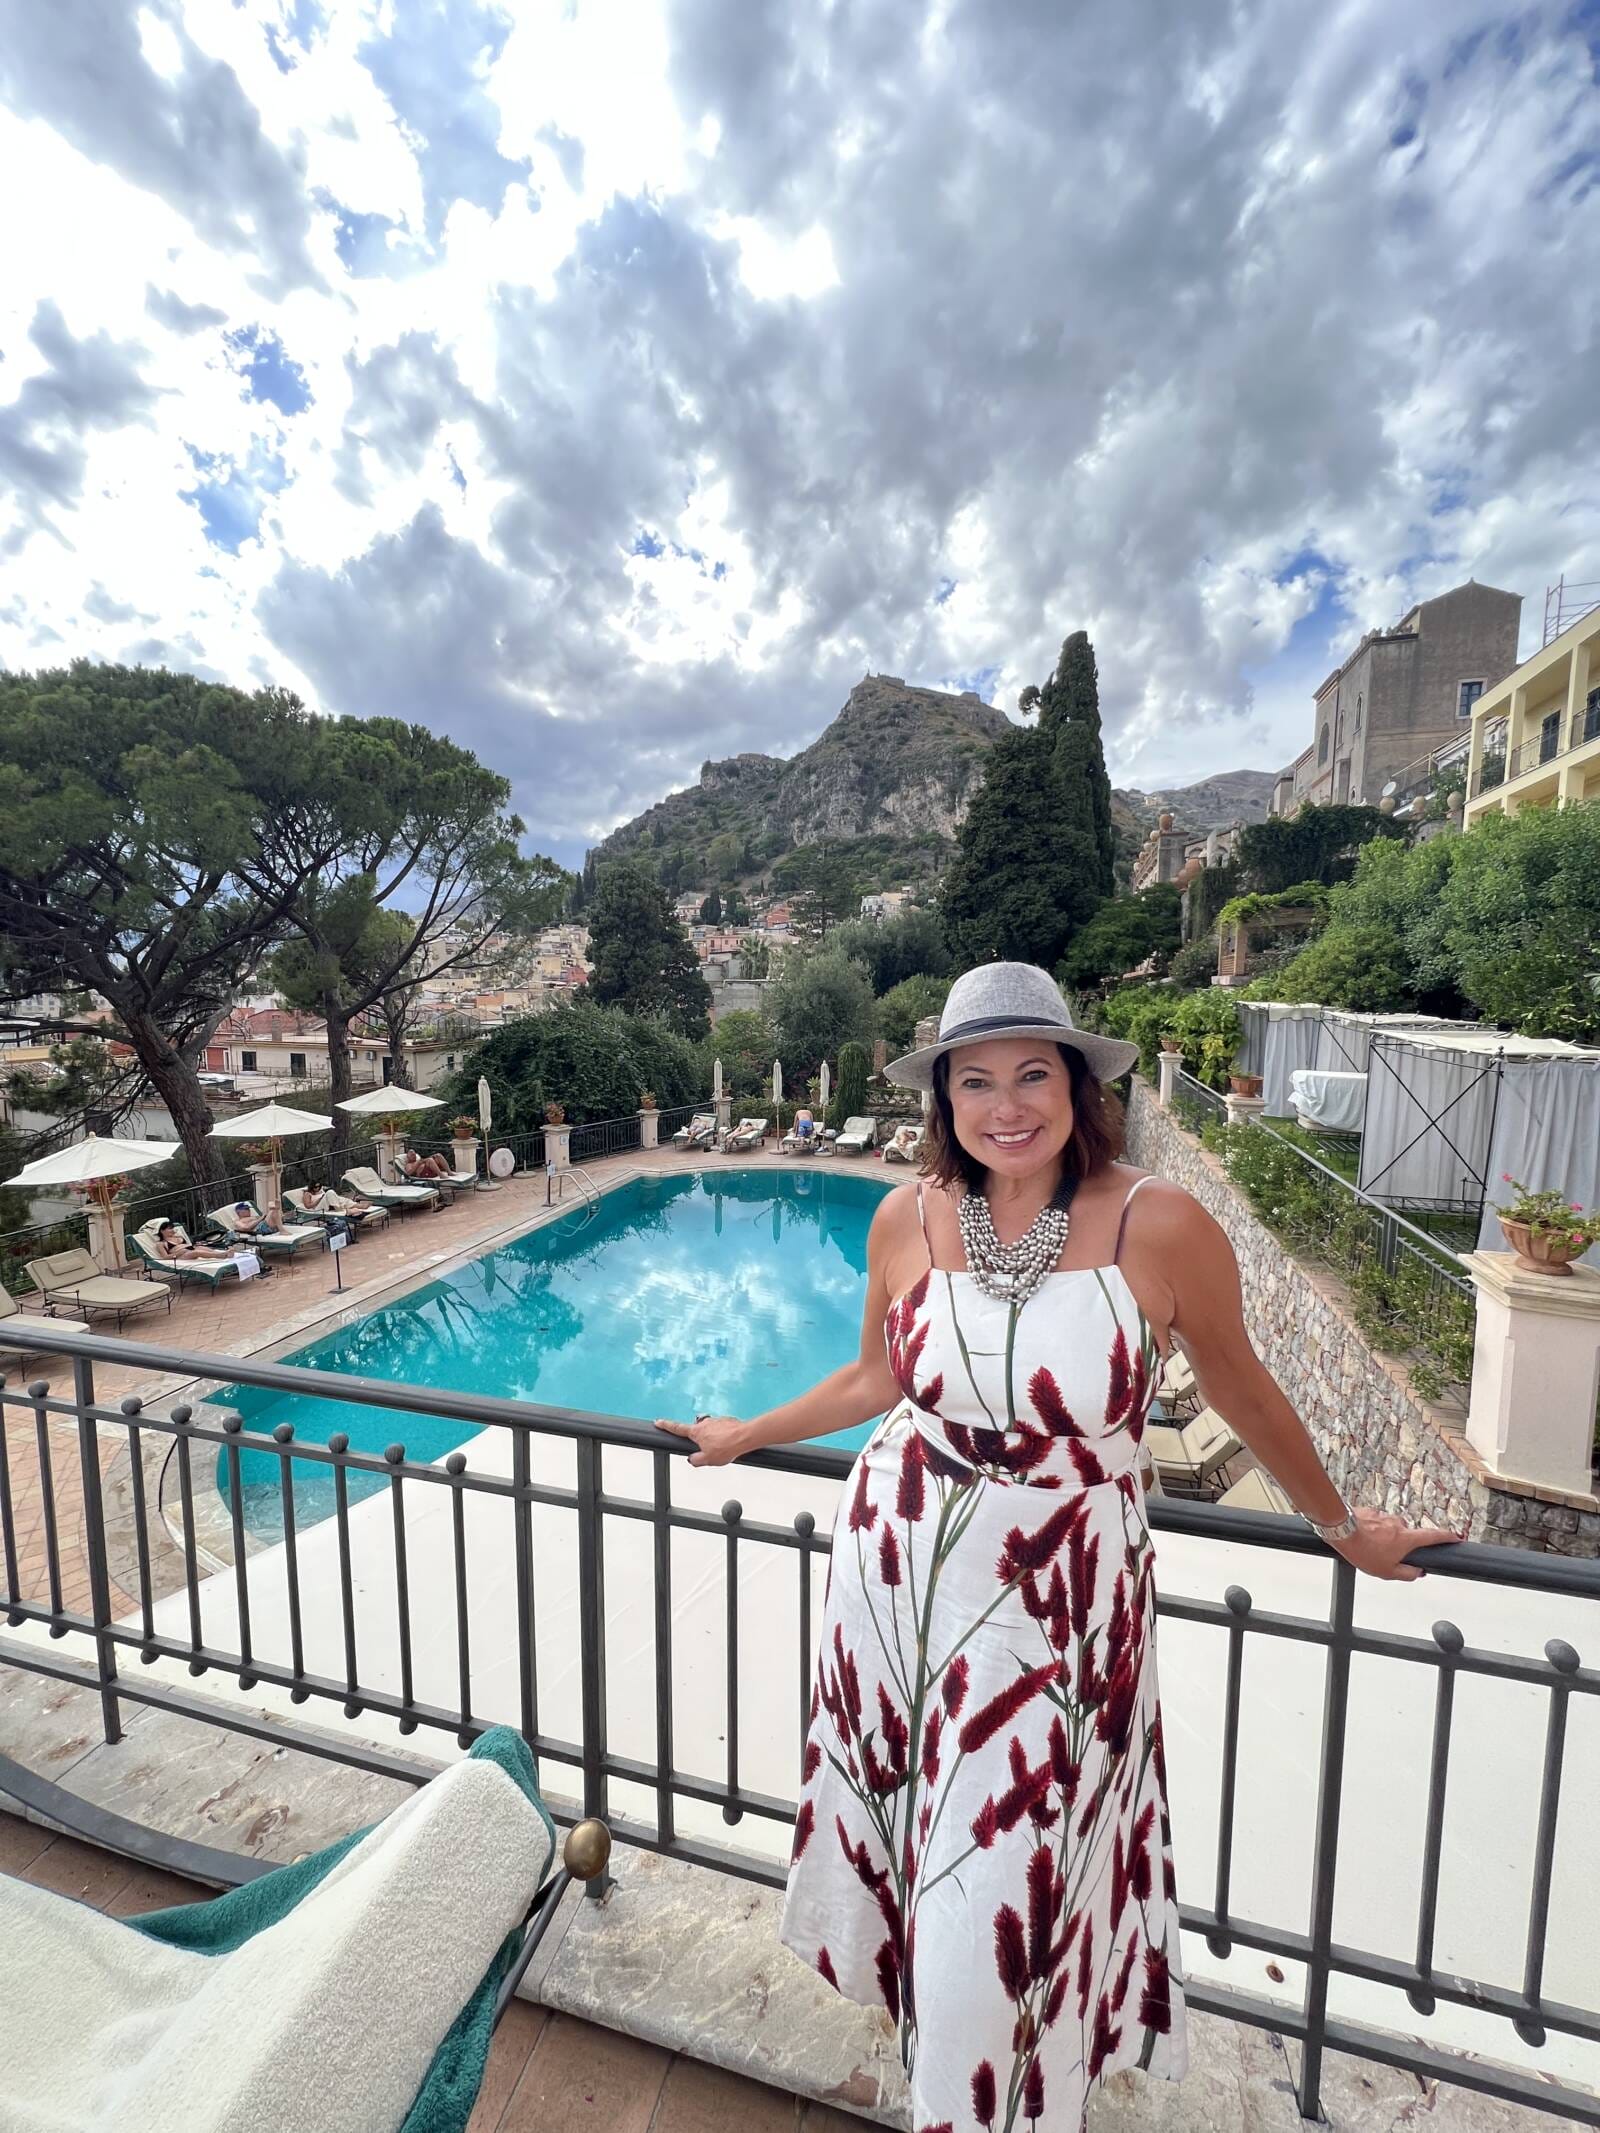 Hotéis Belmond em Taormina: experiências de luxo no Grand Hotel Timeo e Villa Sant’Andrea